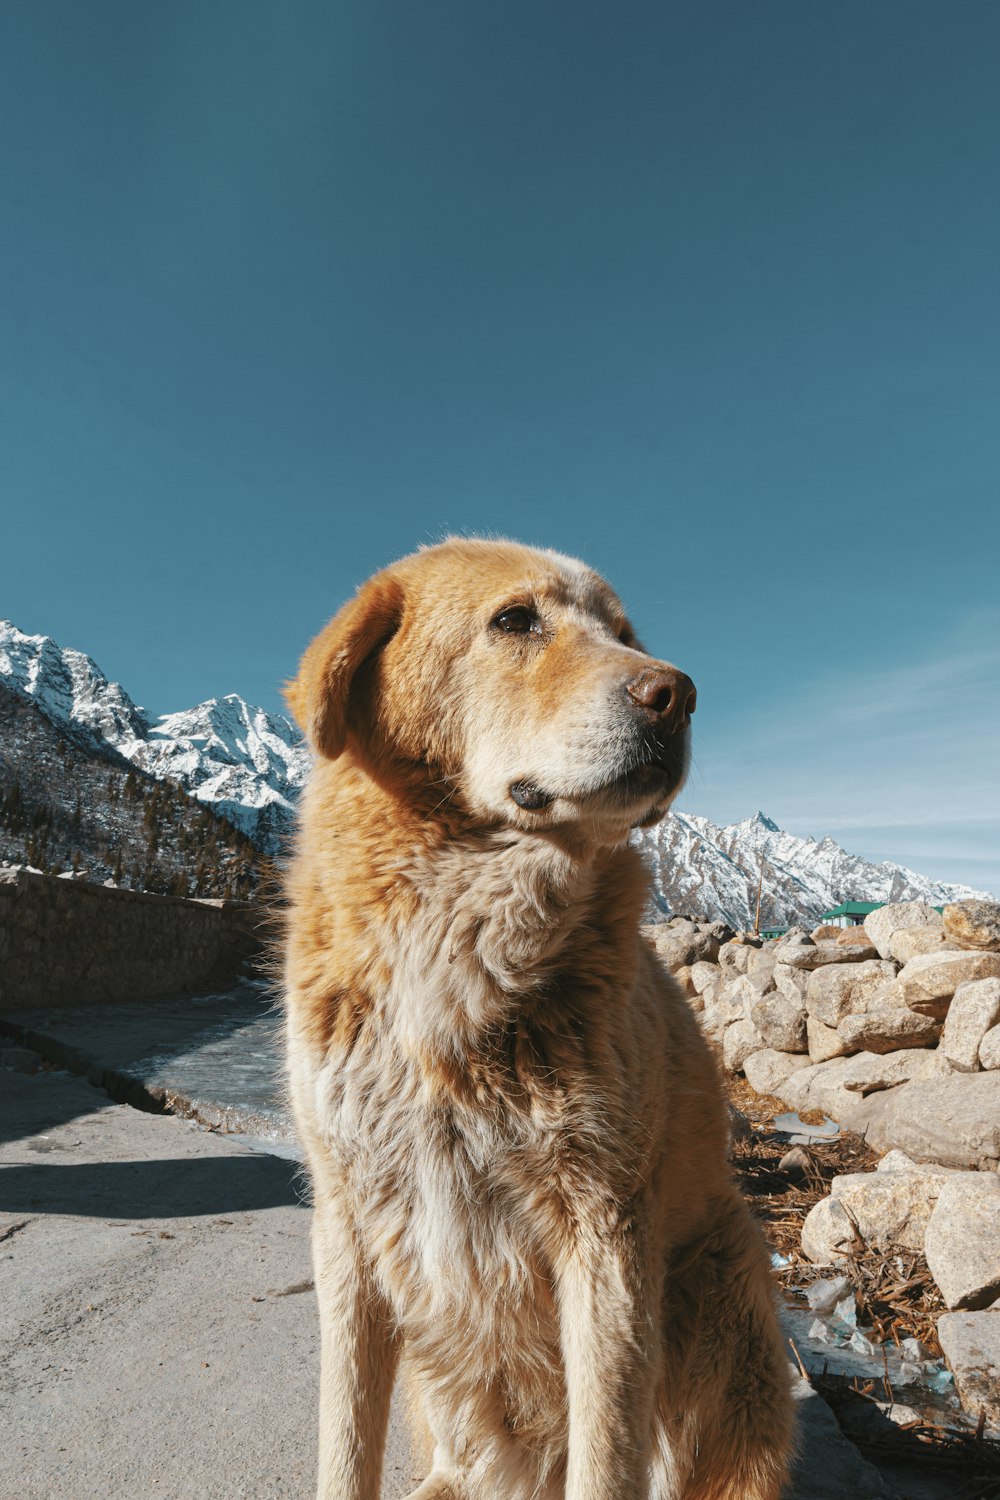 brauner, kurzhaariger Hund sitzt tagsüber auf grauem Betonpflaster